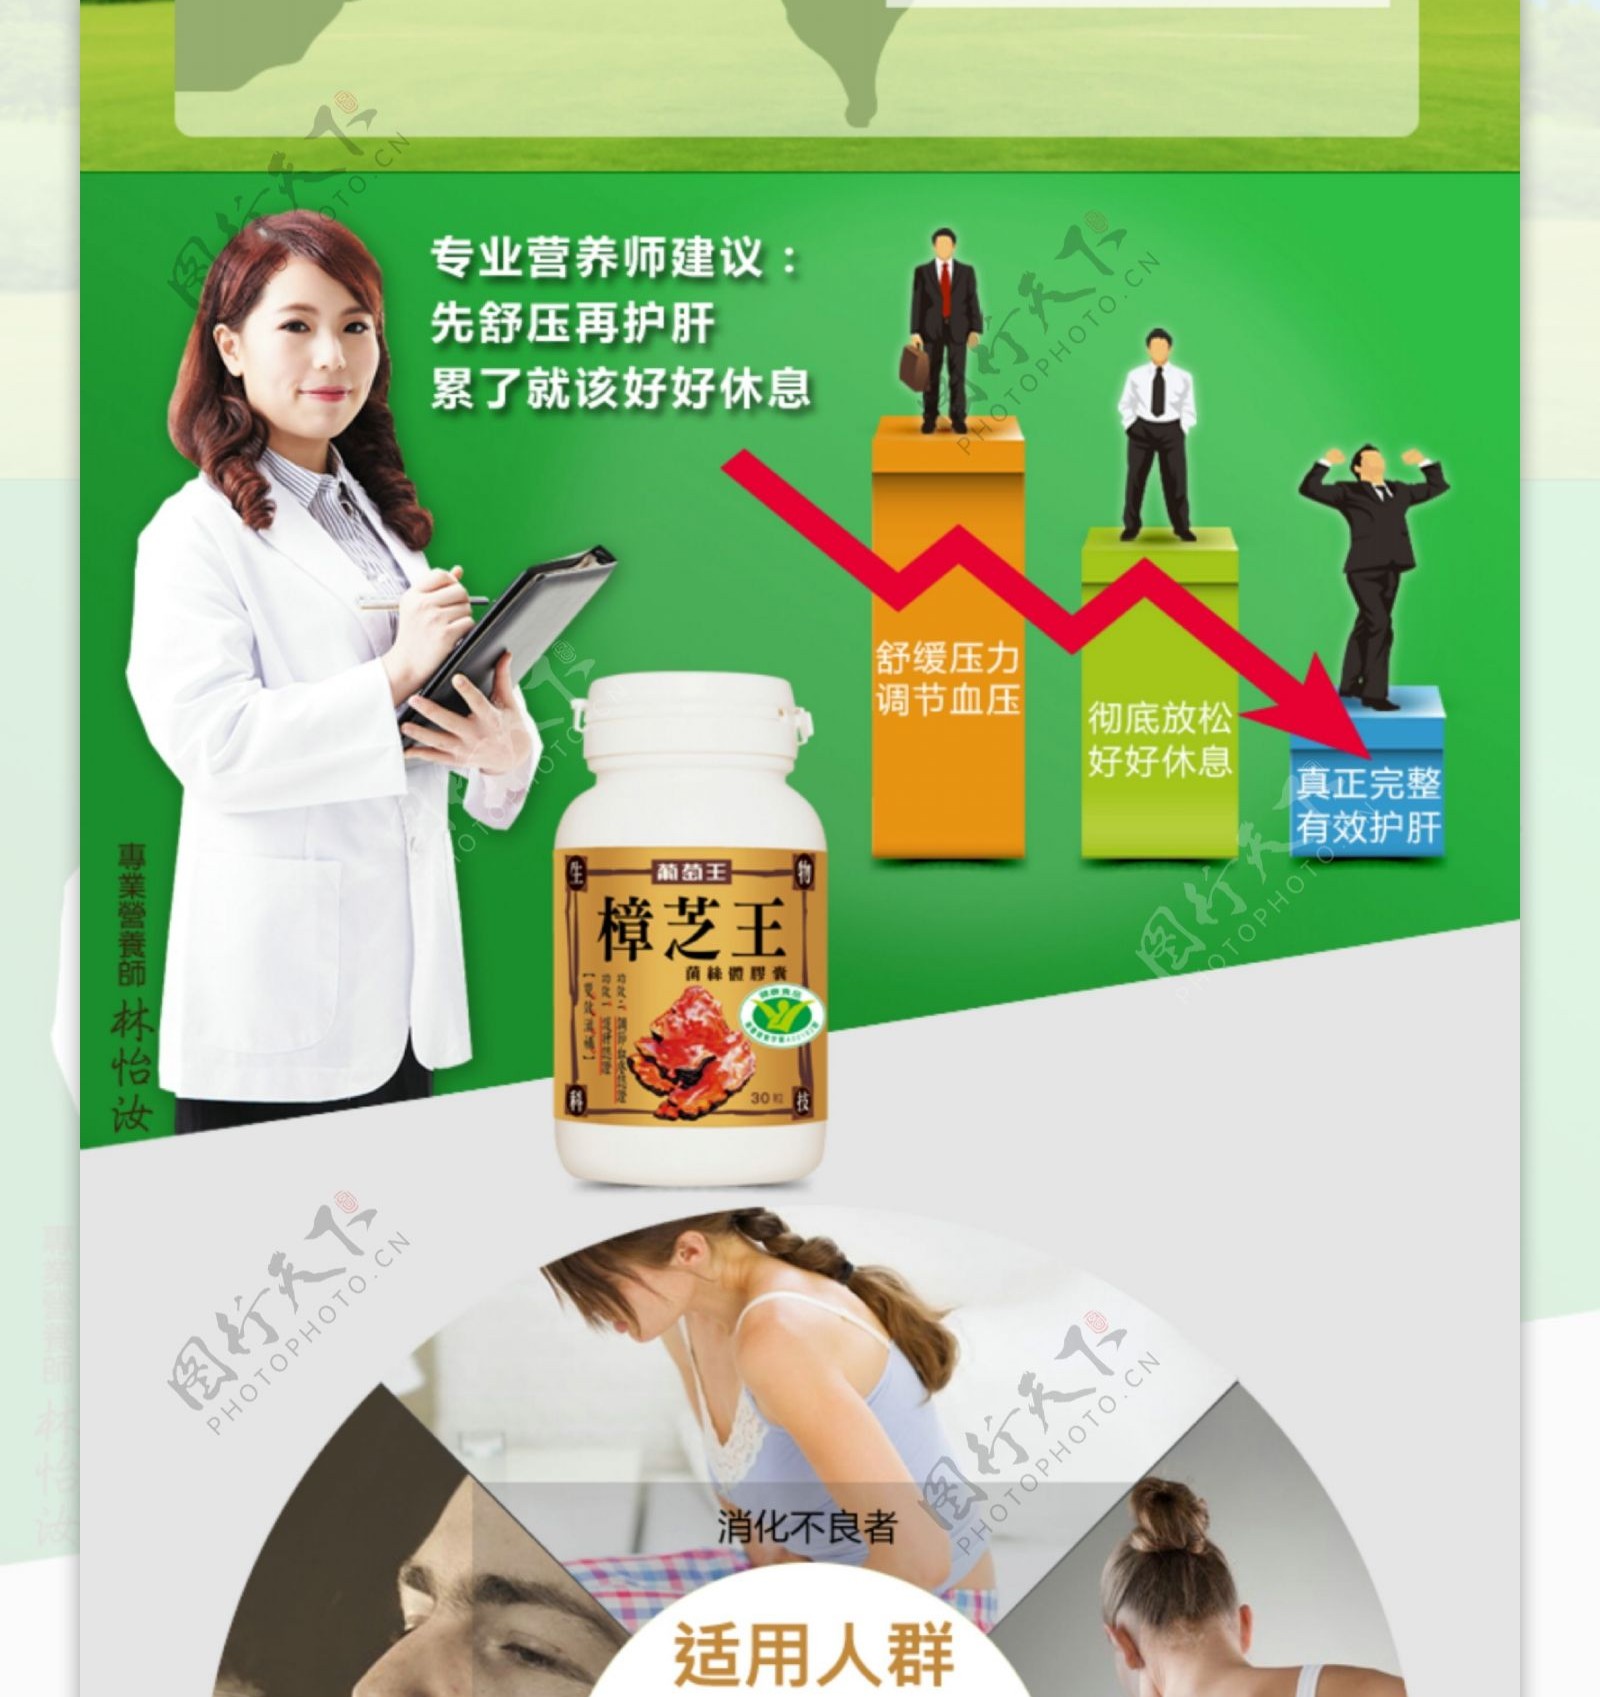 台湾保健食品樟芝王淘宝详情页绿色主题